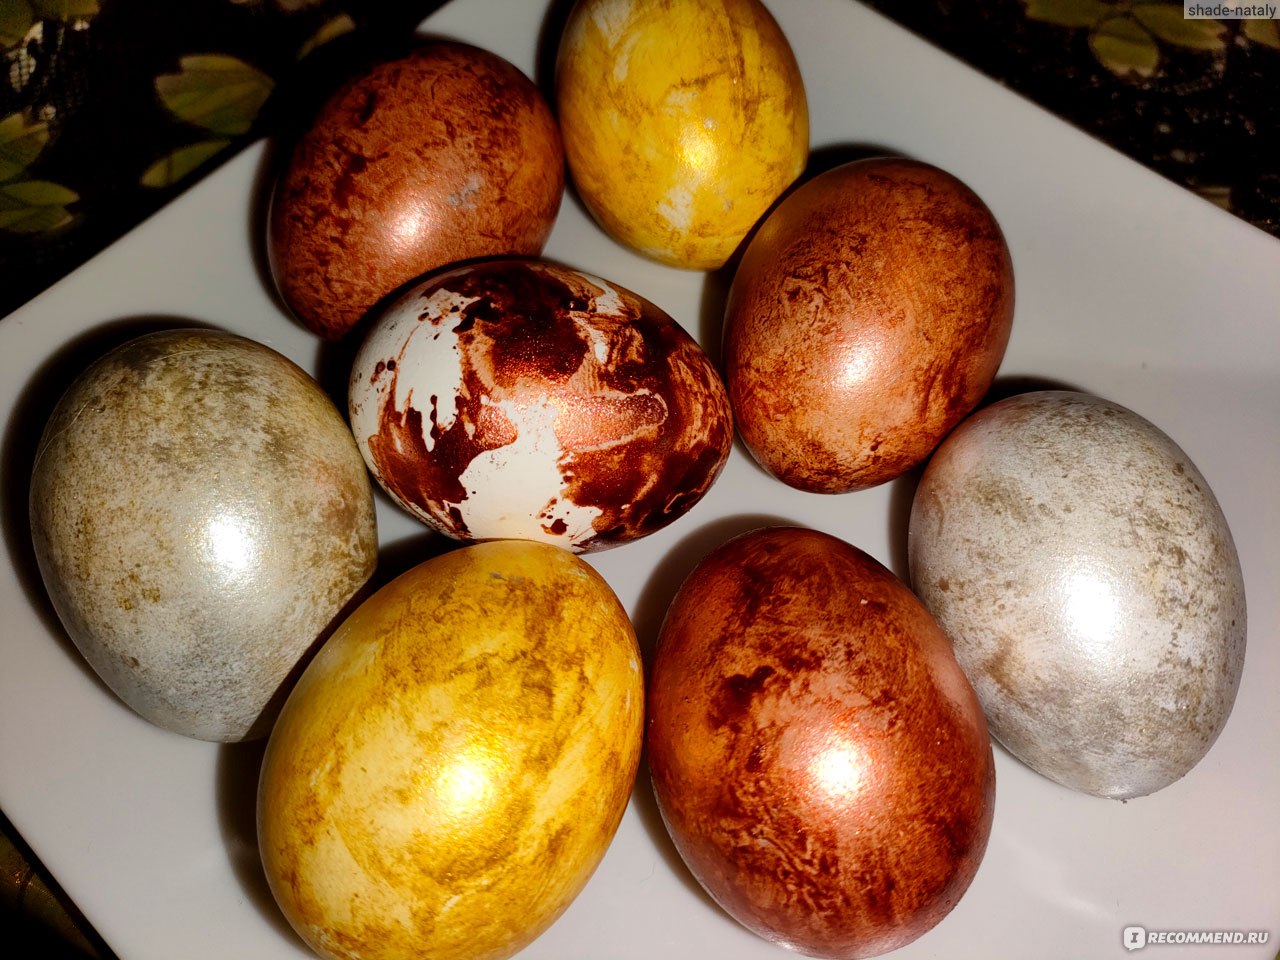 Пищевой краситель для пасхальных яиц Домашняя кухня Металлические красители